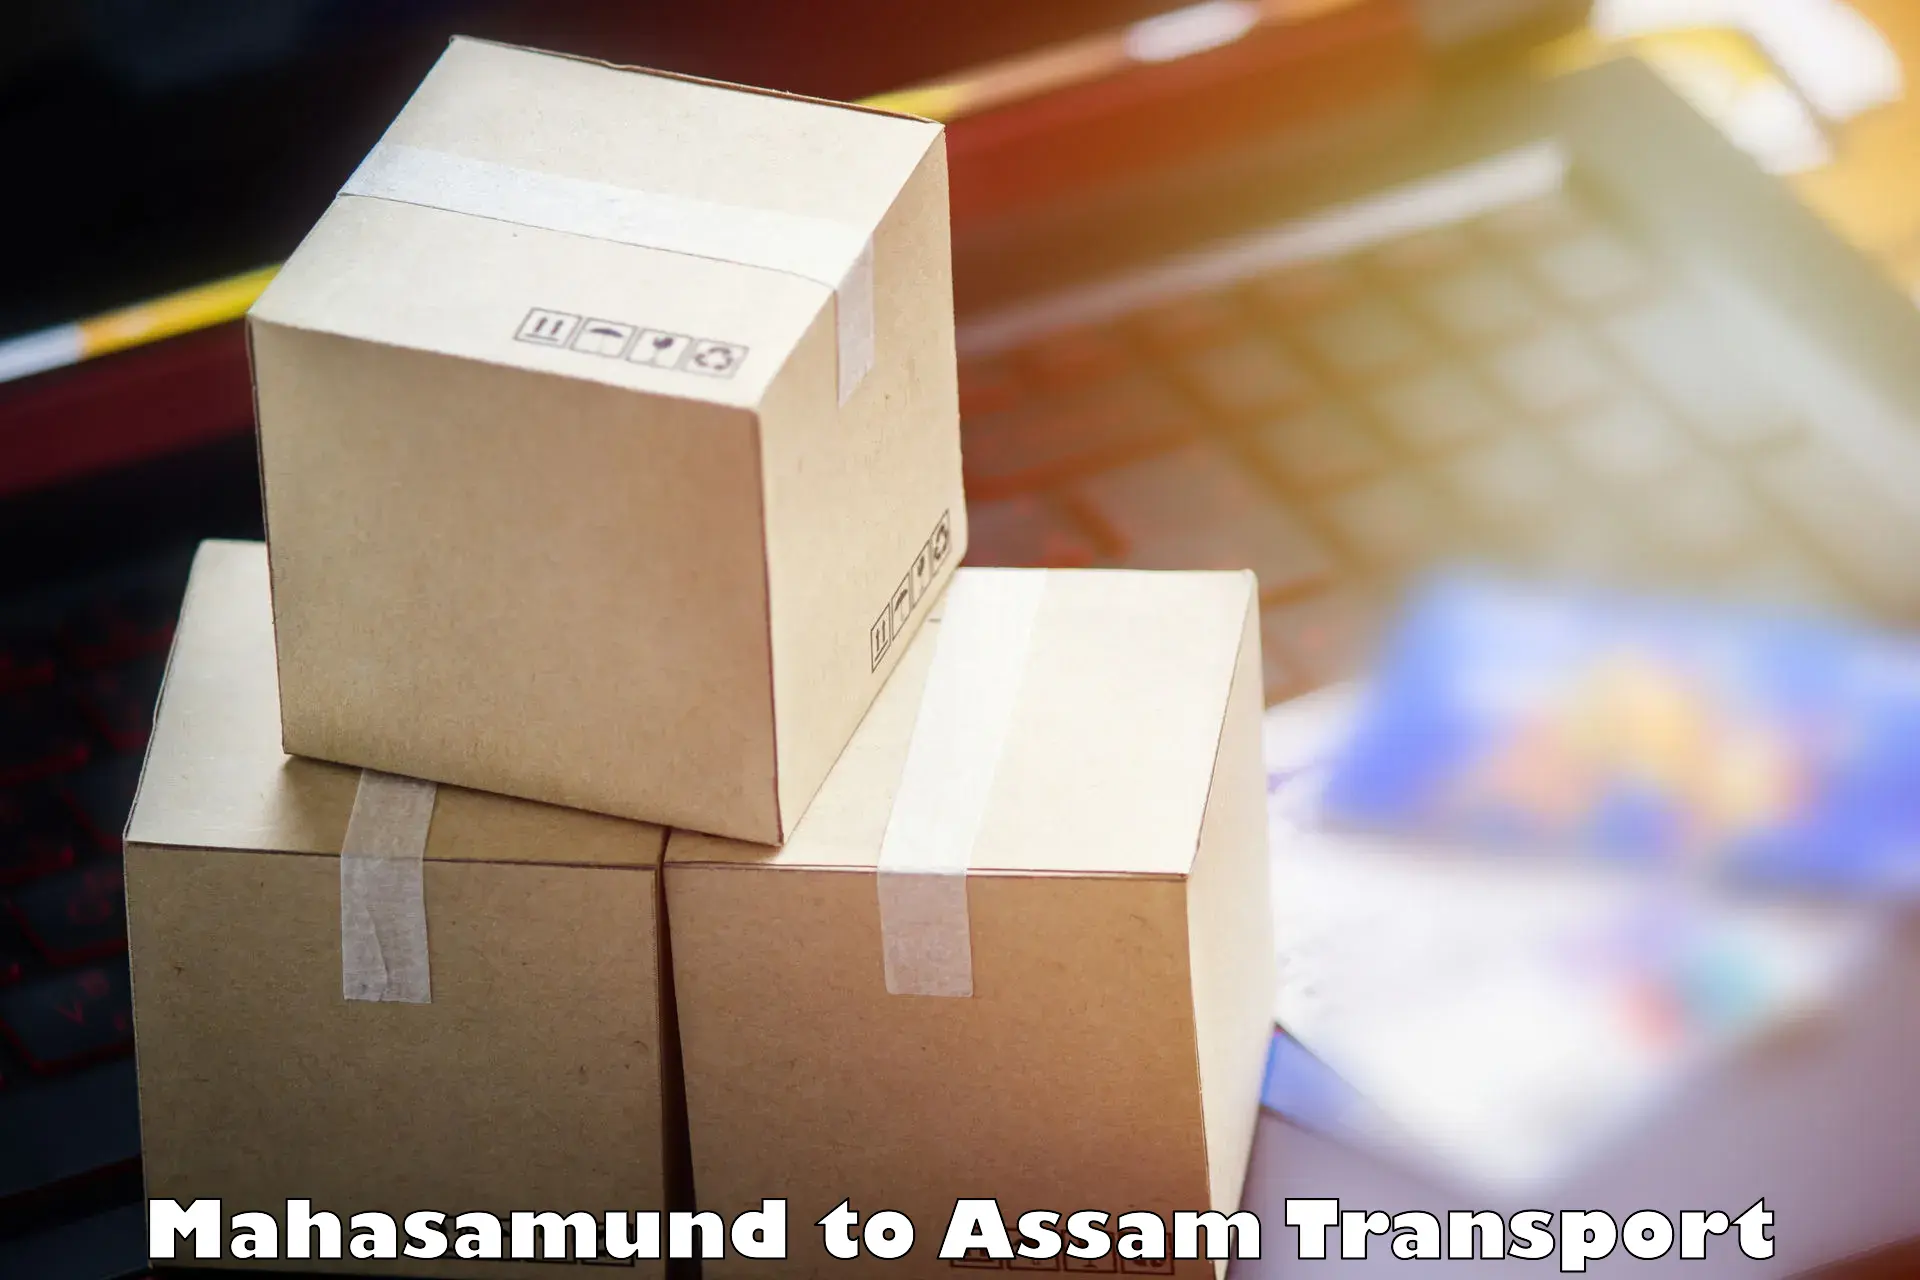 Road transport online services Mahasamund to Bijni